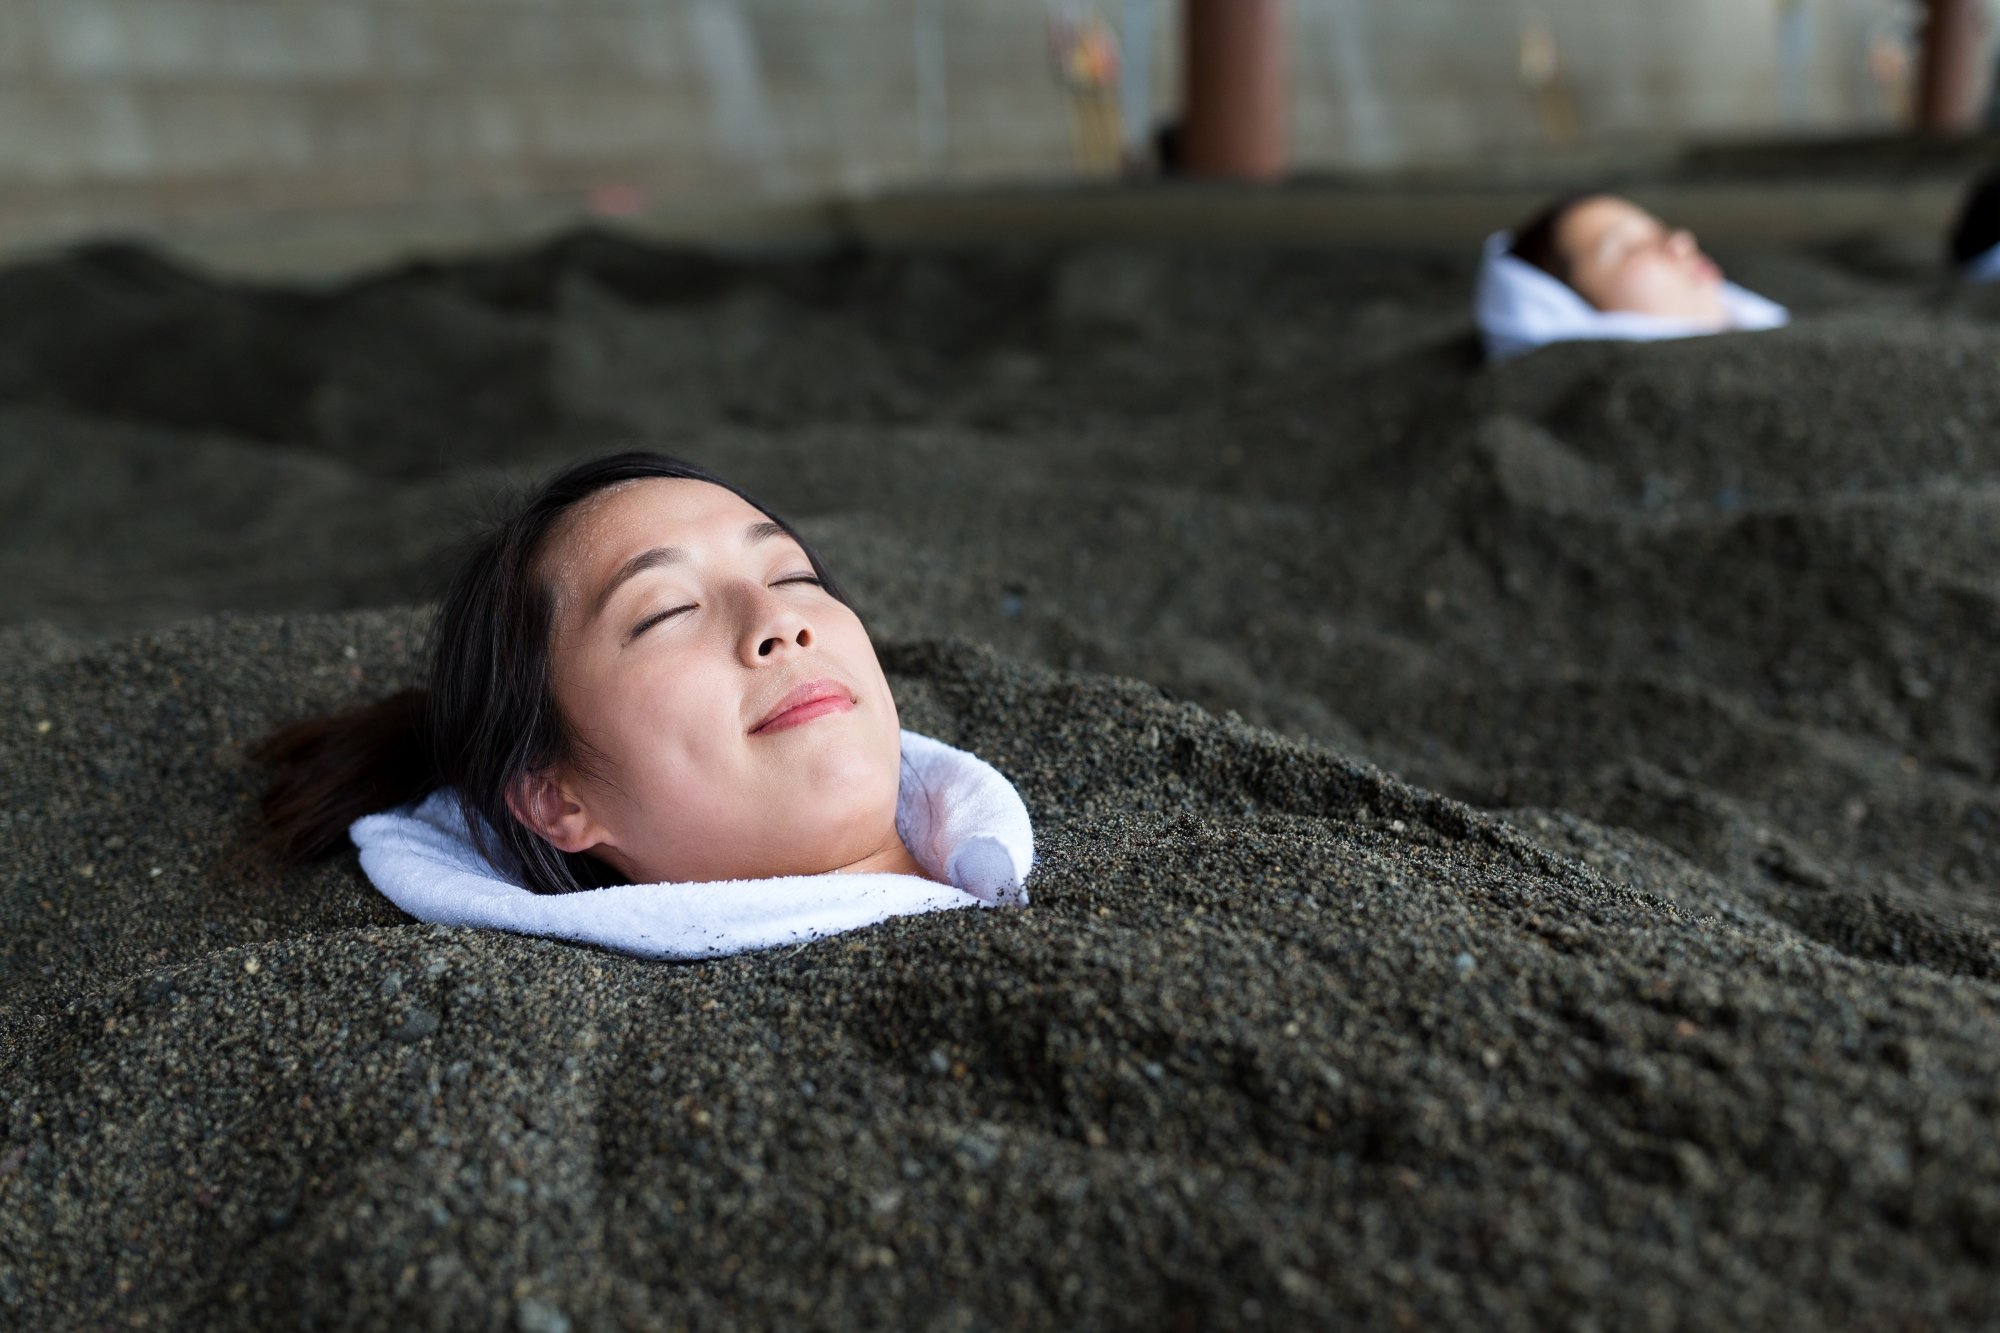 La sablothérapie : tout savoir sur cette thérapie par le sable : Femme  Actuelle Le MAG